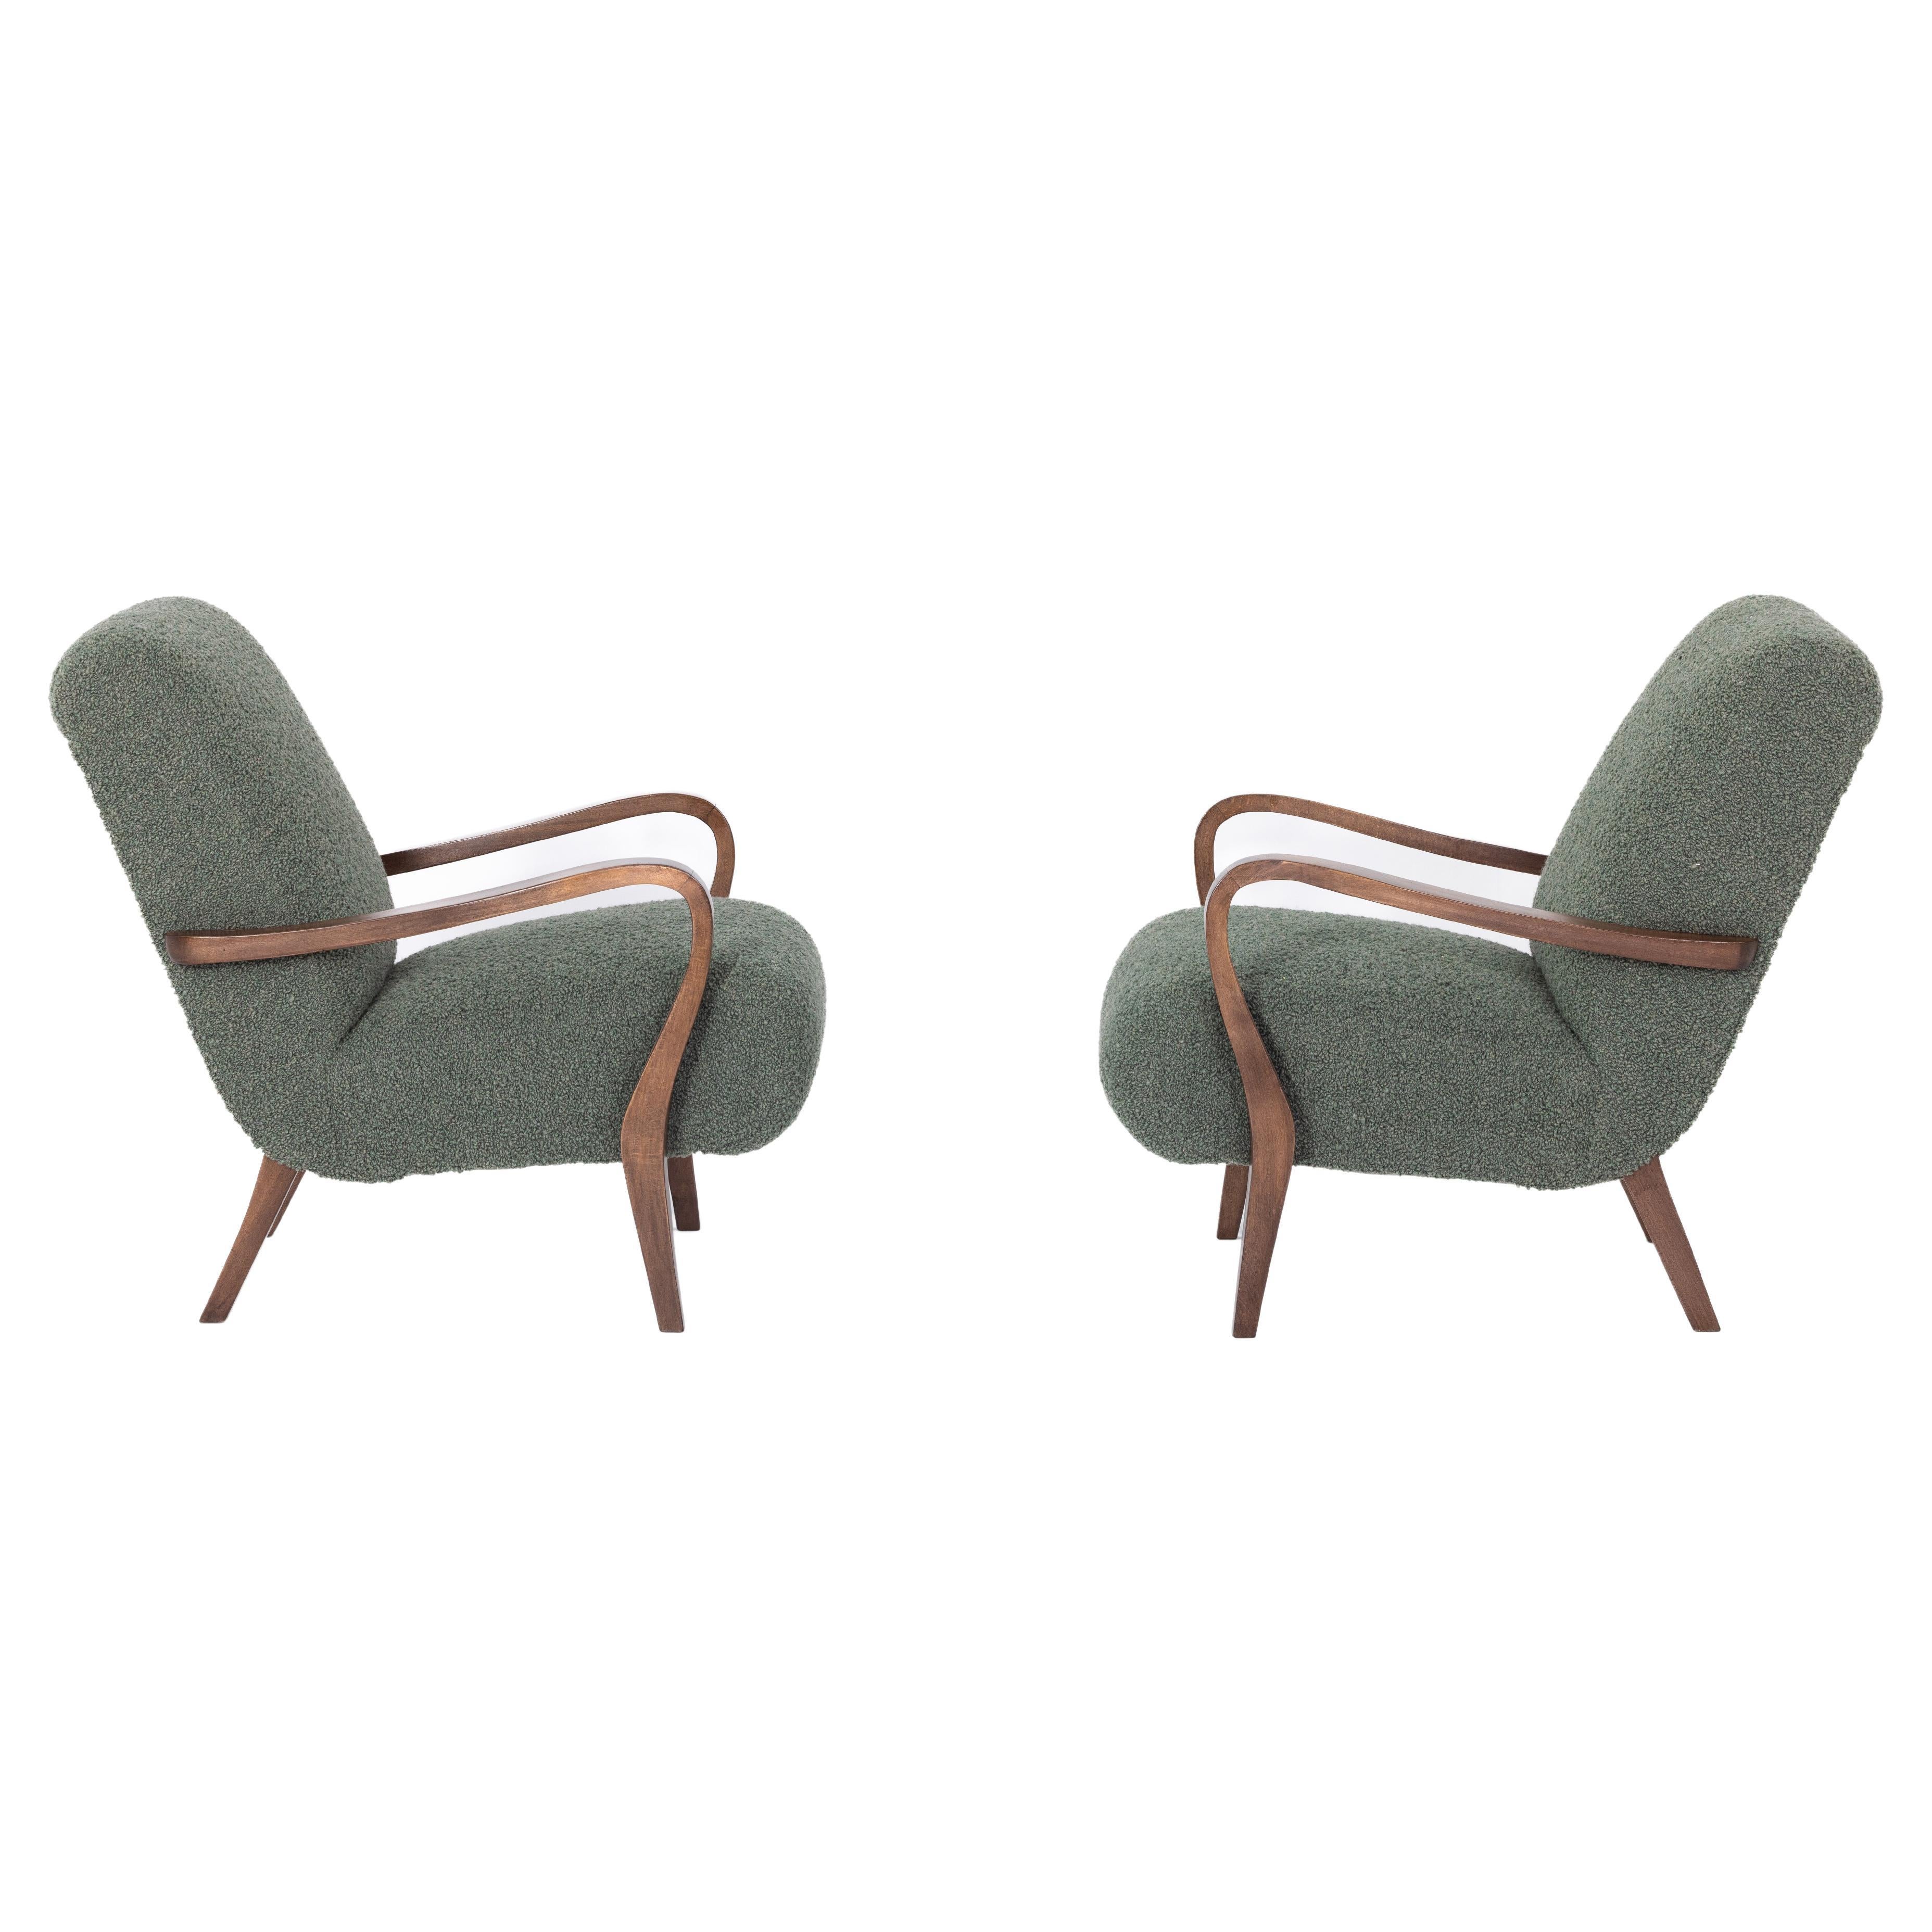 Pair of art deco armchairs, France 1920s, Dedar fabric For Sale